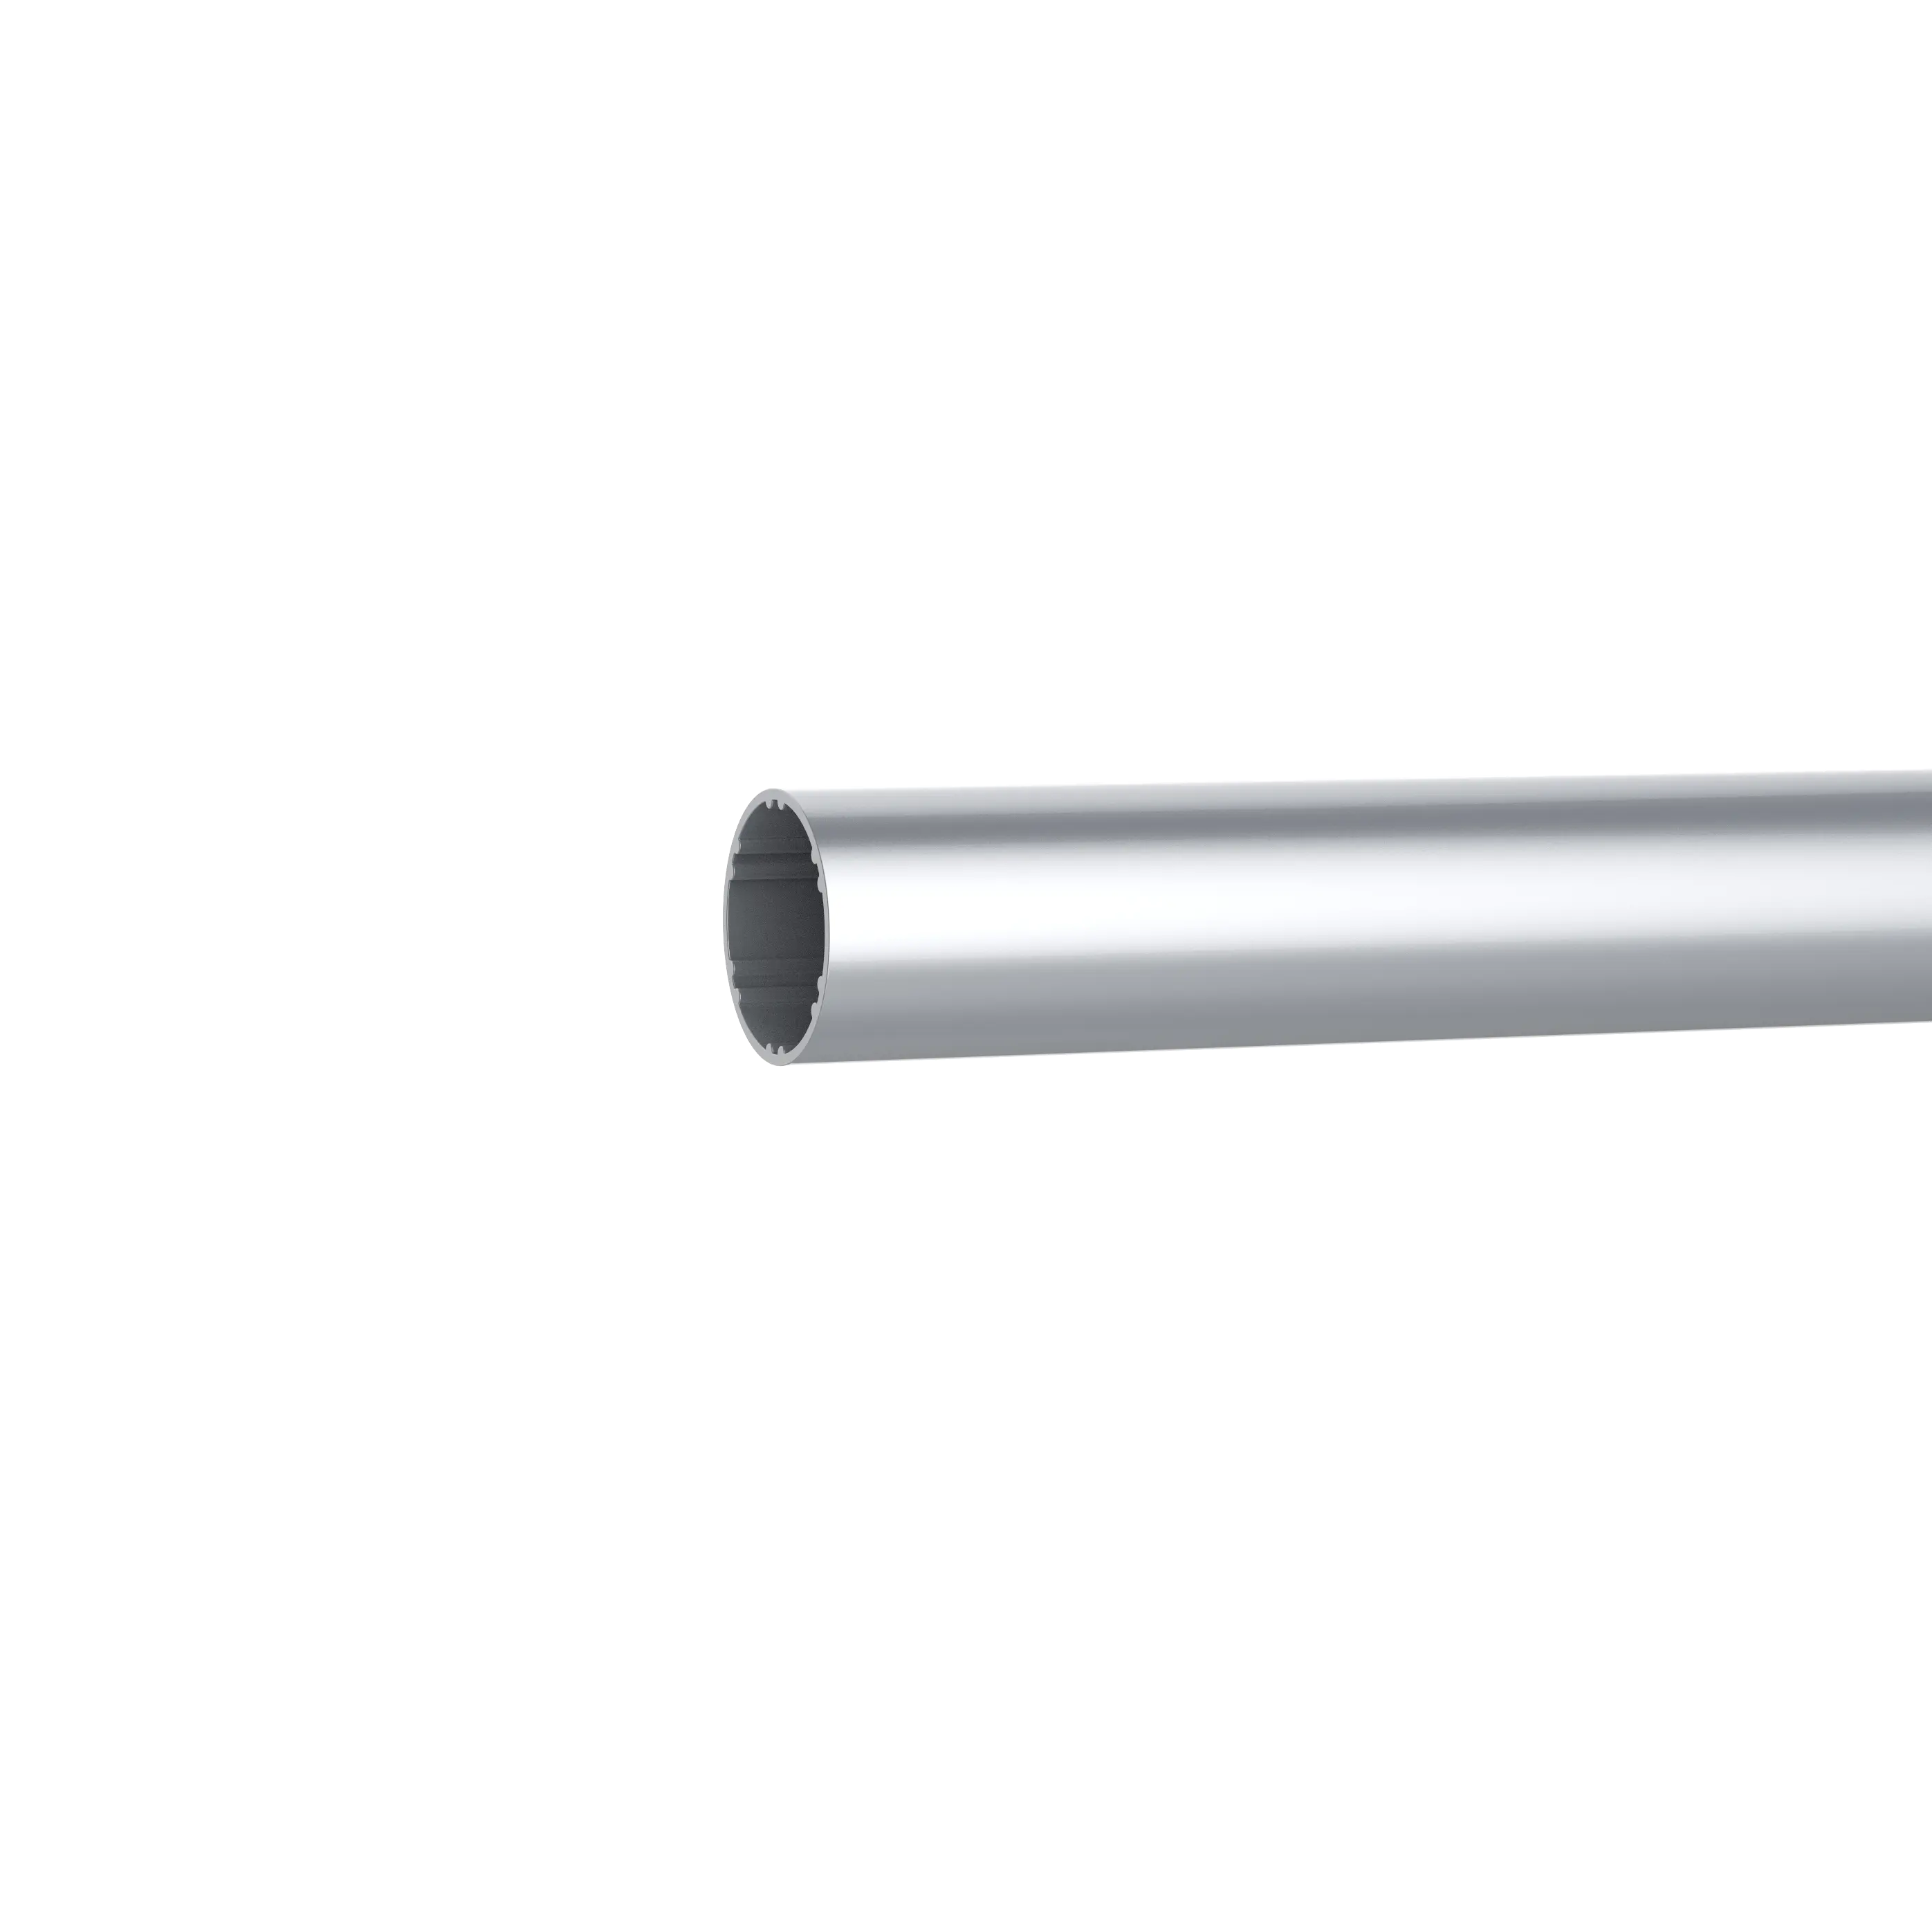 Pista de tubo de alumínio de 18mm, para componentes cego, cortina de janelas